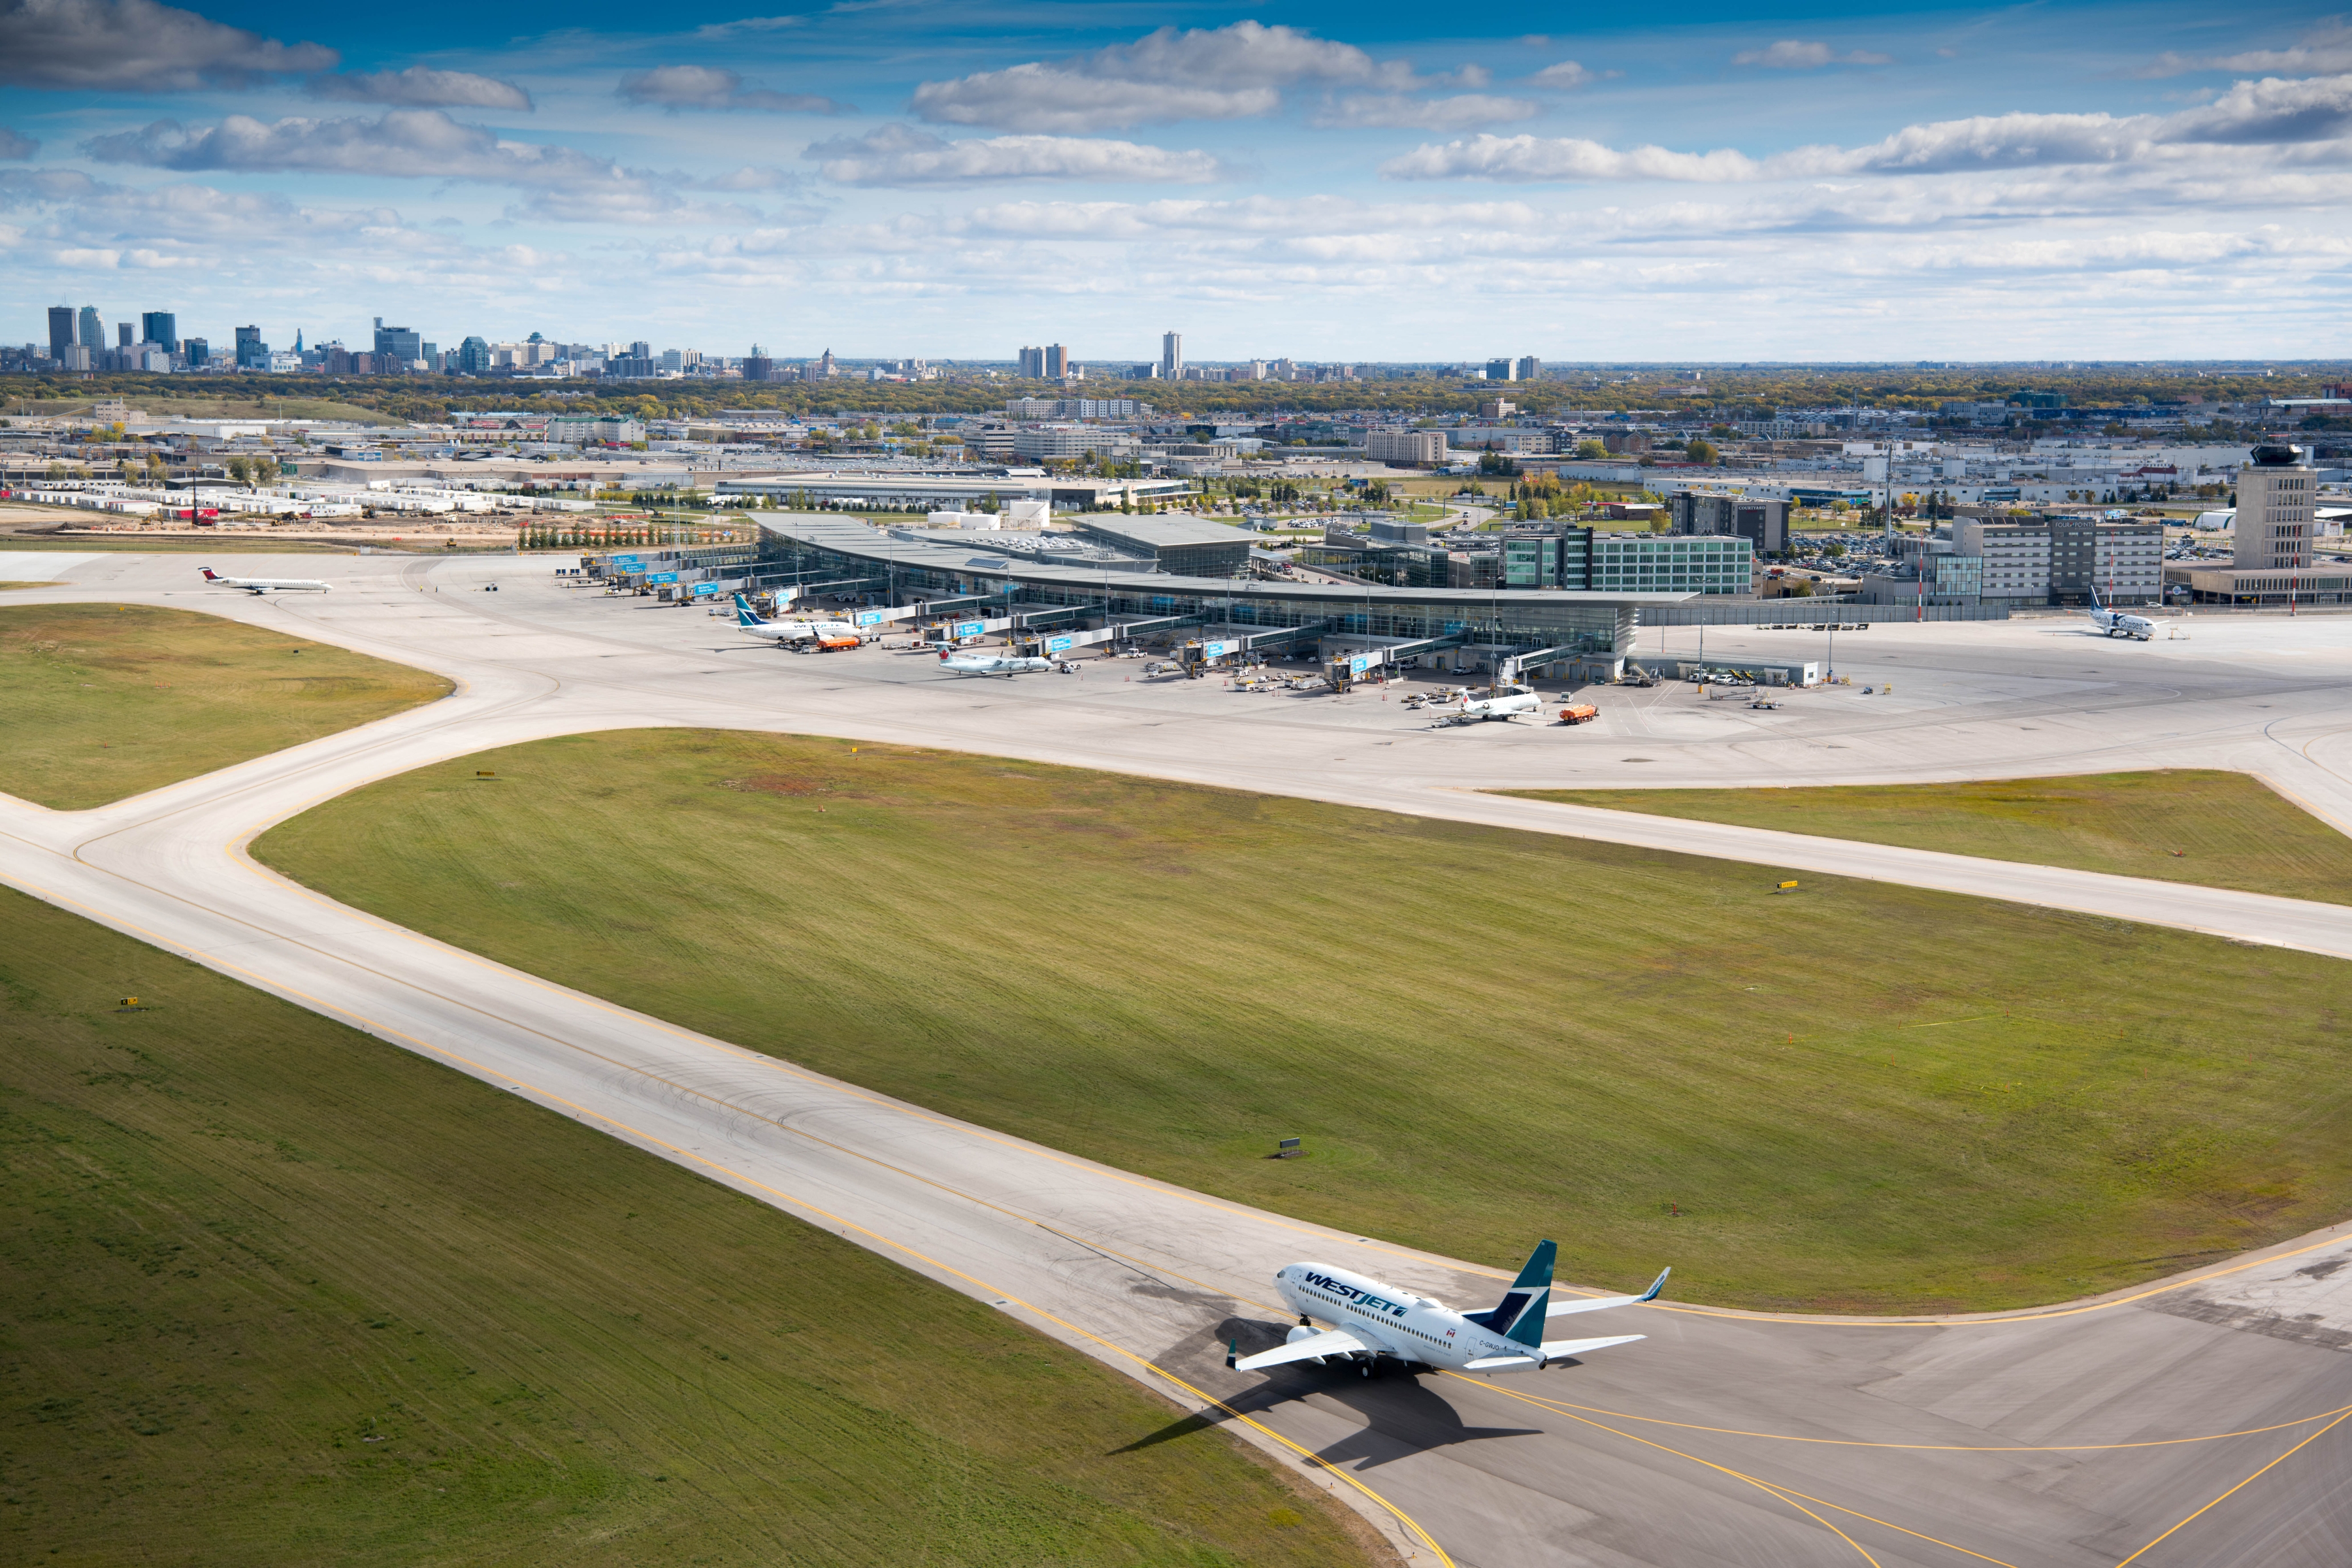 Un avion de WestJet se dirige vers l'aérogare de l'aéroport international Richardson de Winnipeg, avec l'horizon de la ville en arrière-plan.